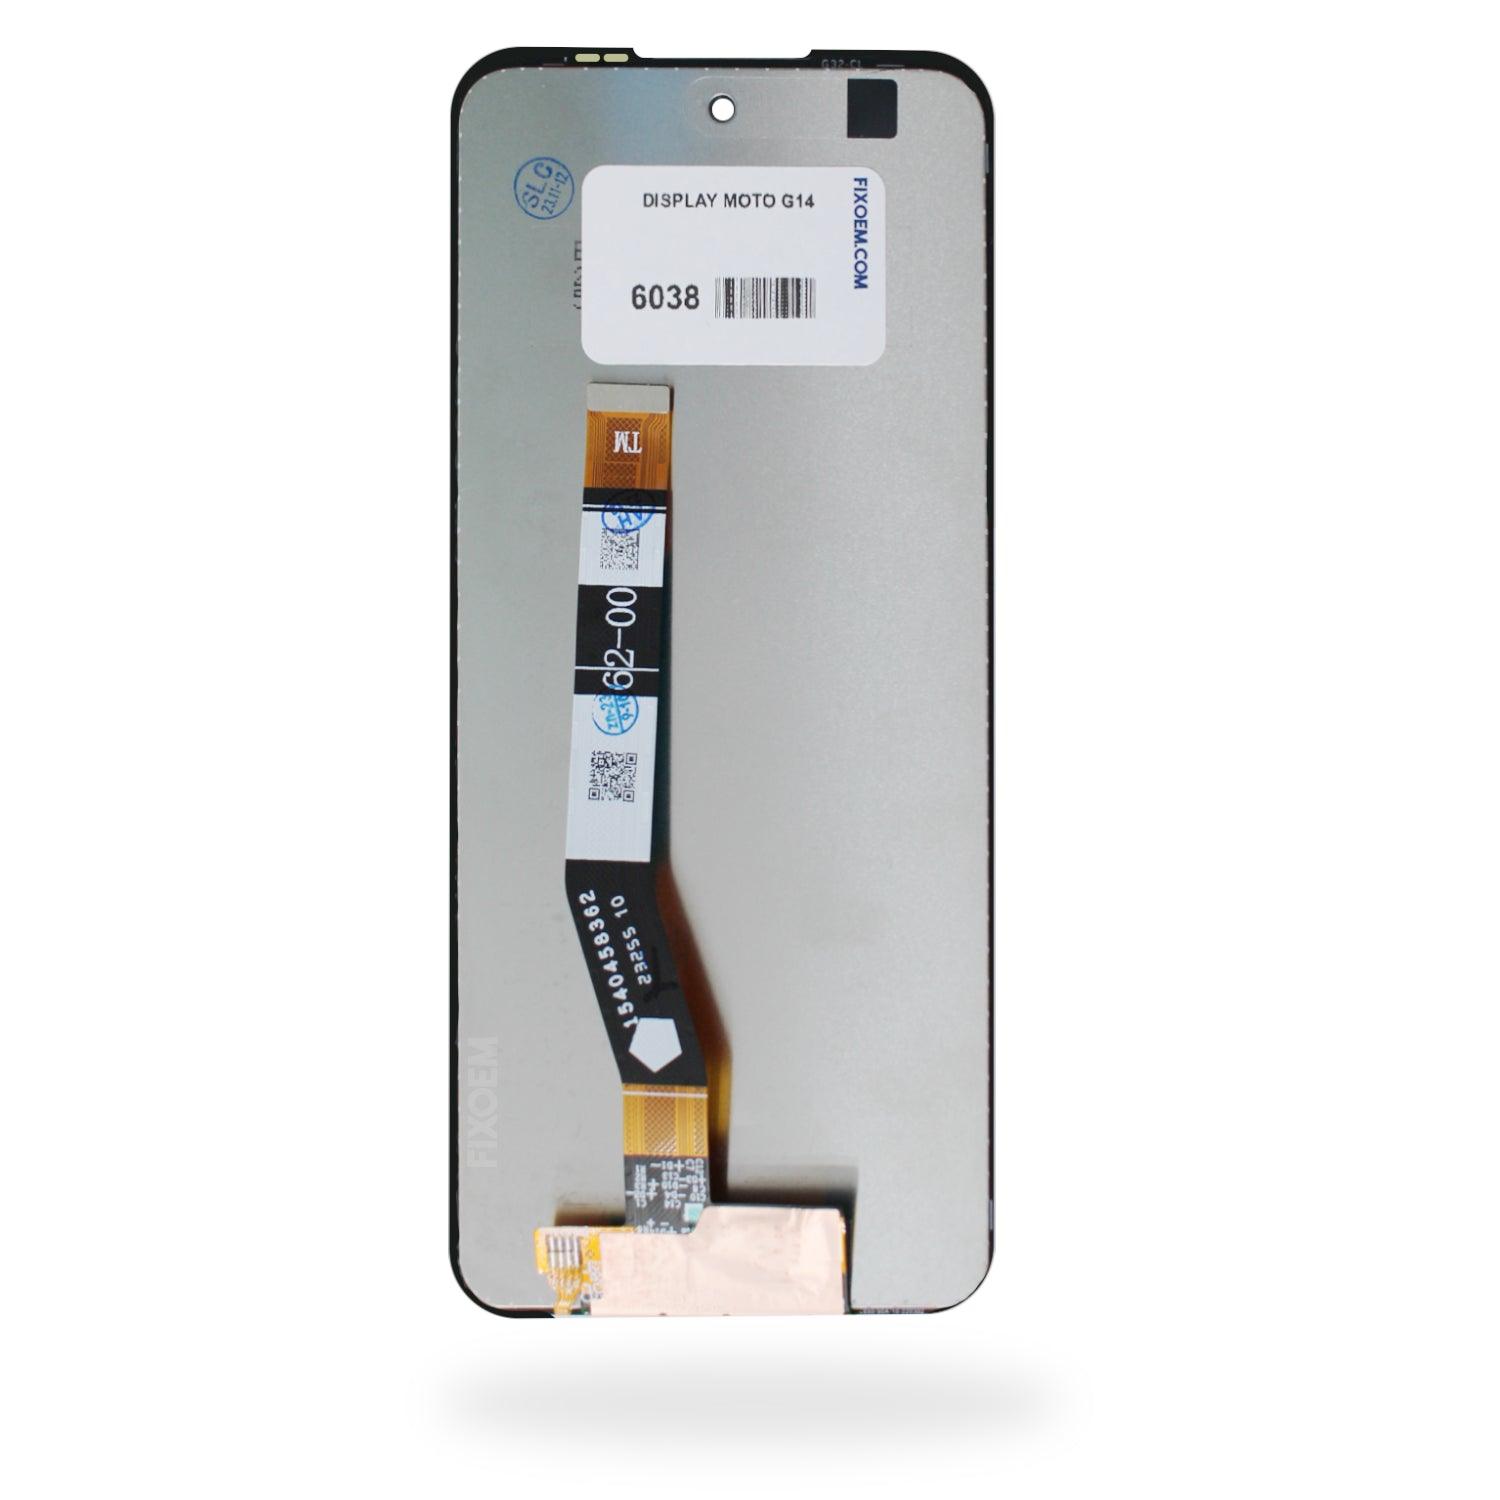 Display Moto G14 Xt2341 / Moto G54 Xt2343 a solo $ 340.00 Refaccion y puestos celulares, refurbish y microelectronica.- FixOEM